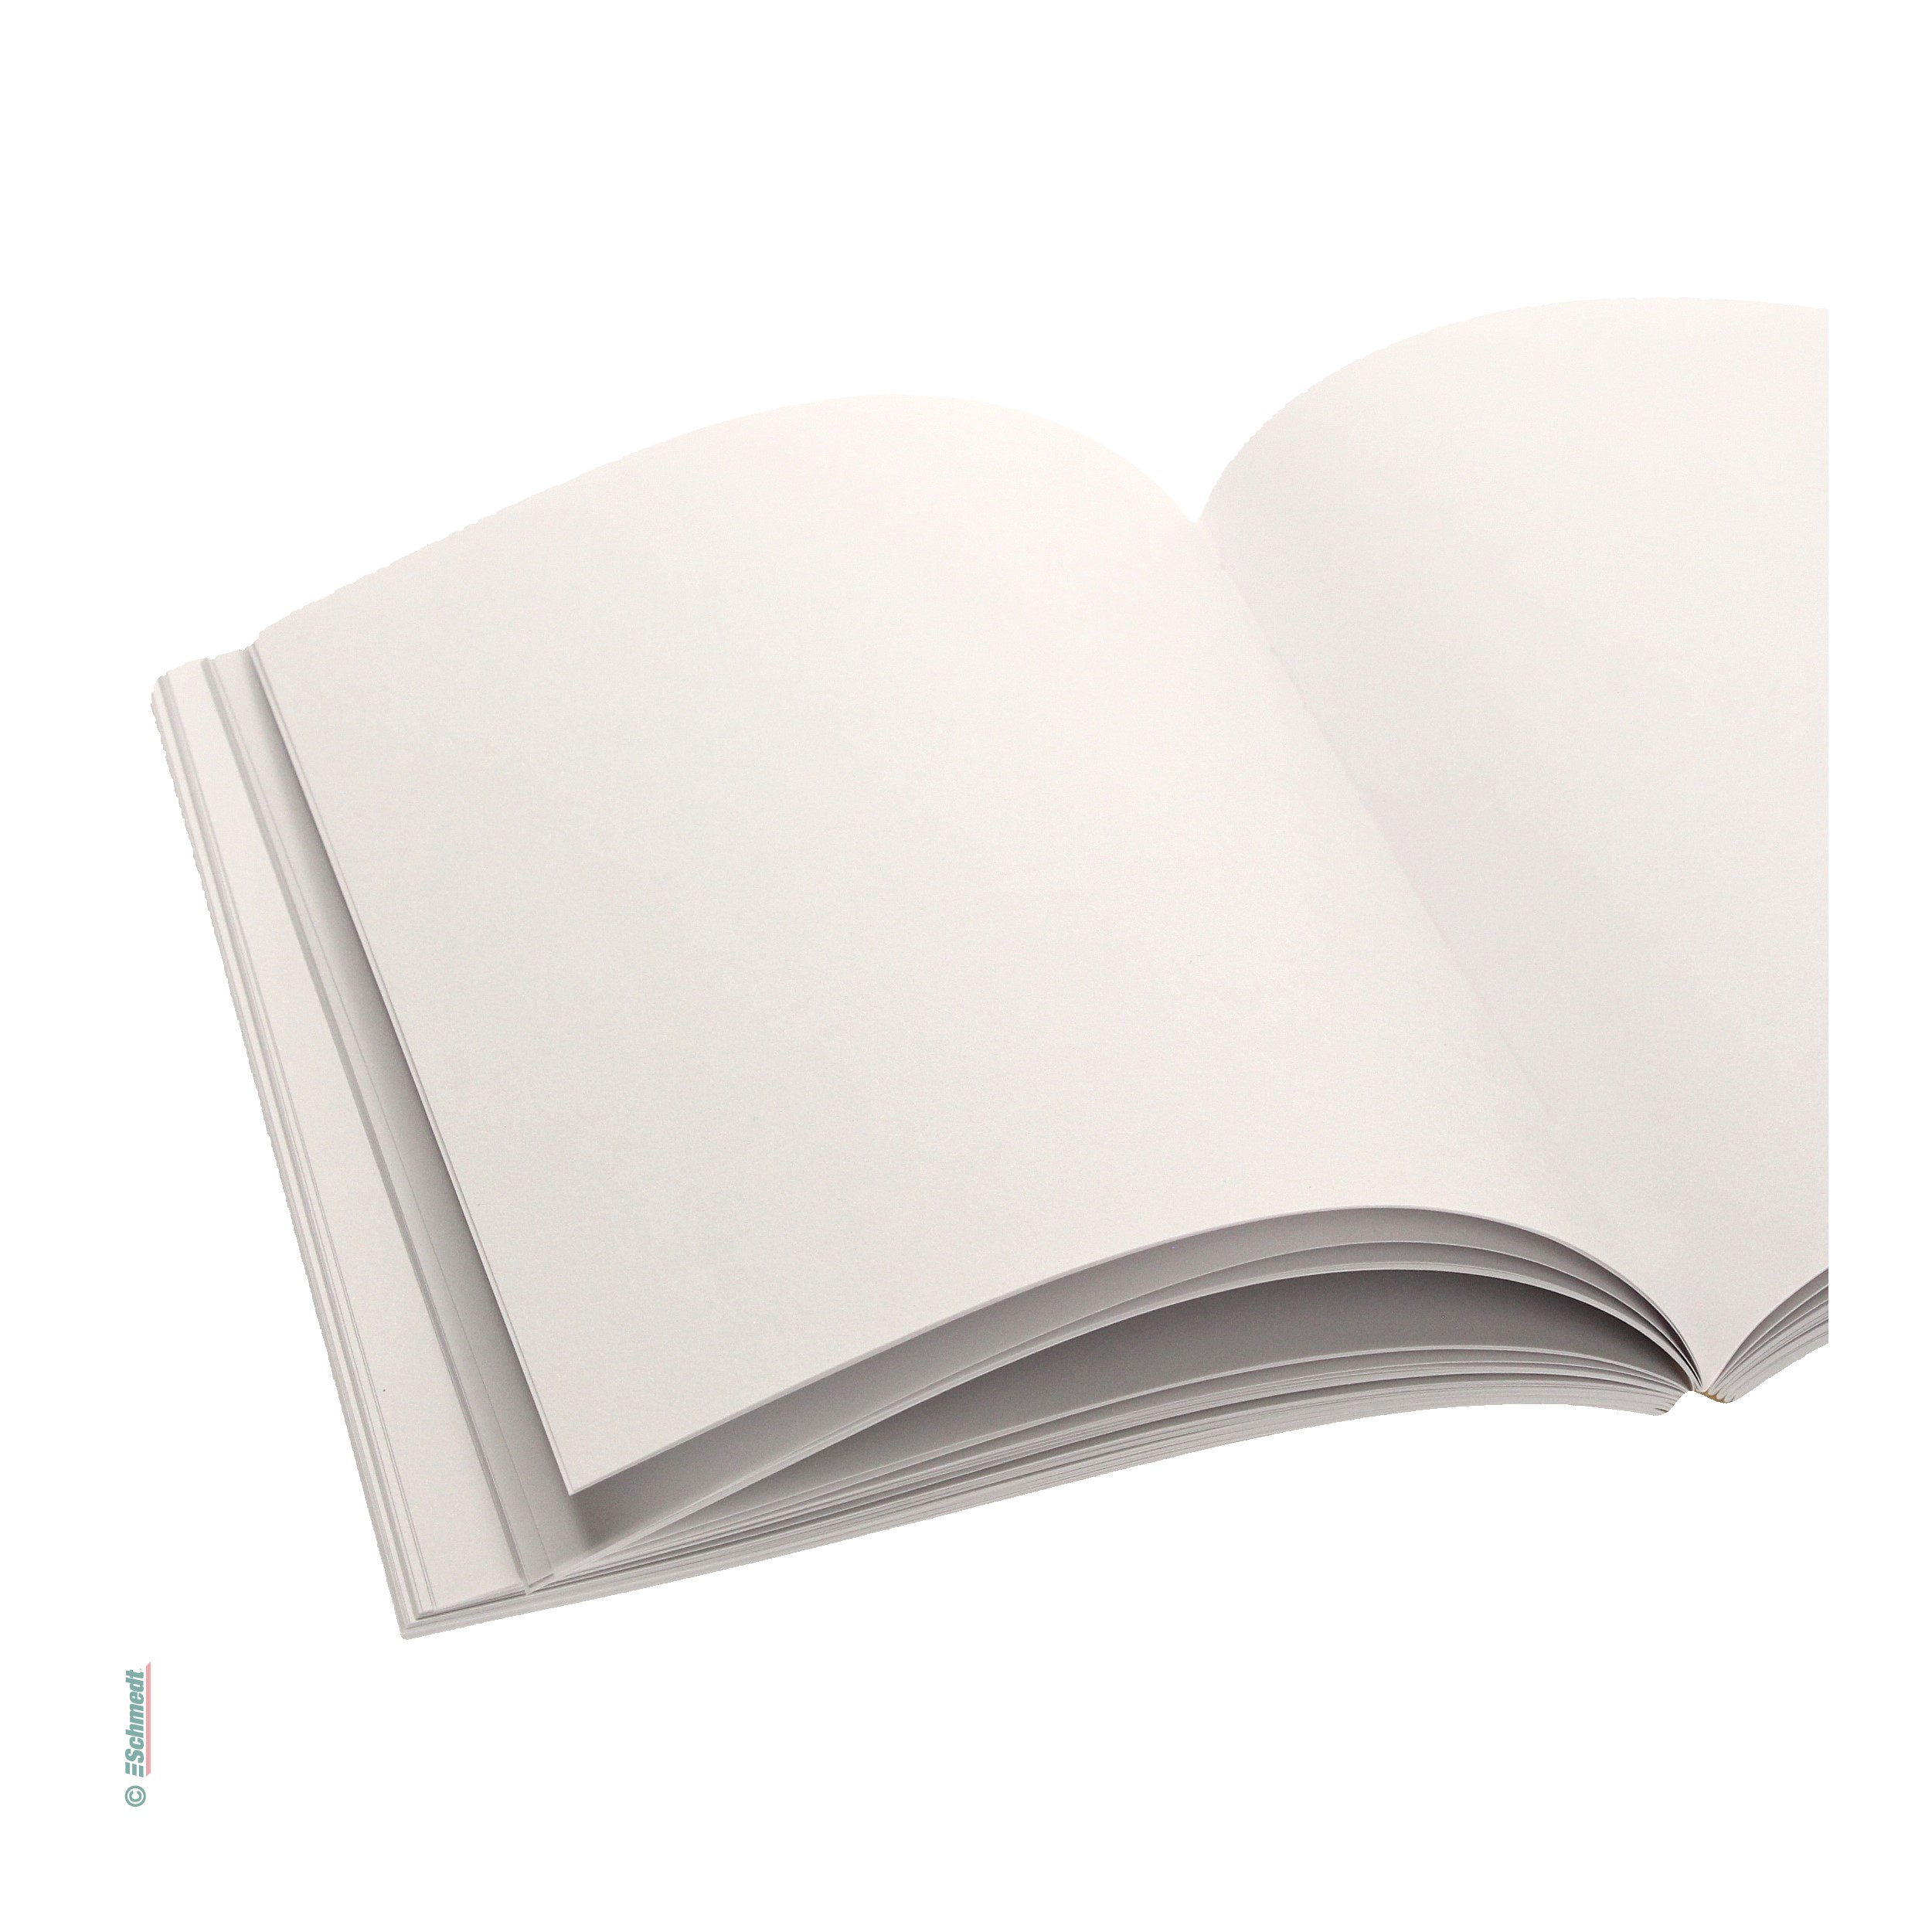 Cuerpo del libro listo - lomo cosido, reforzado con papel crepé - Cuerpo del libro en blanco (sin contenido) para la confección de cuadernos... - imagen-1